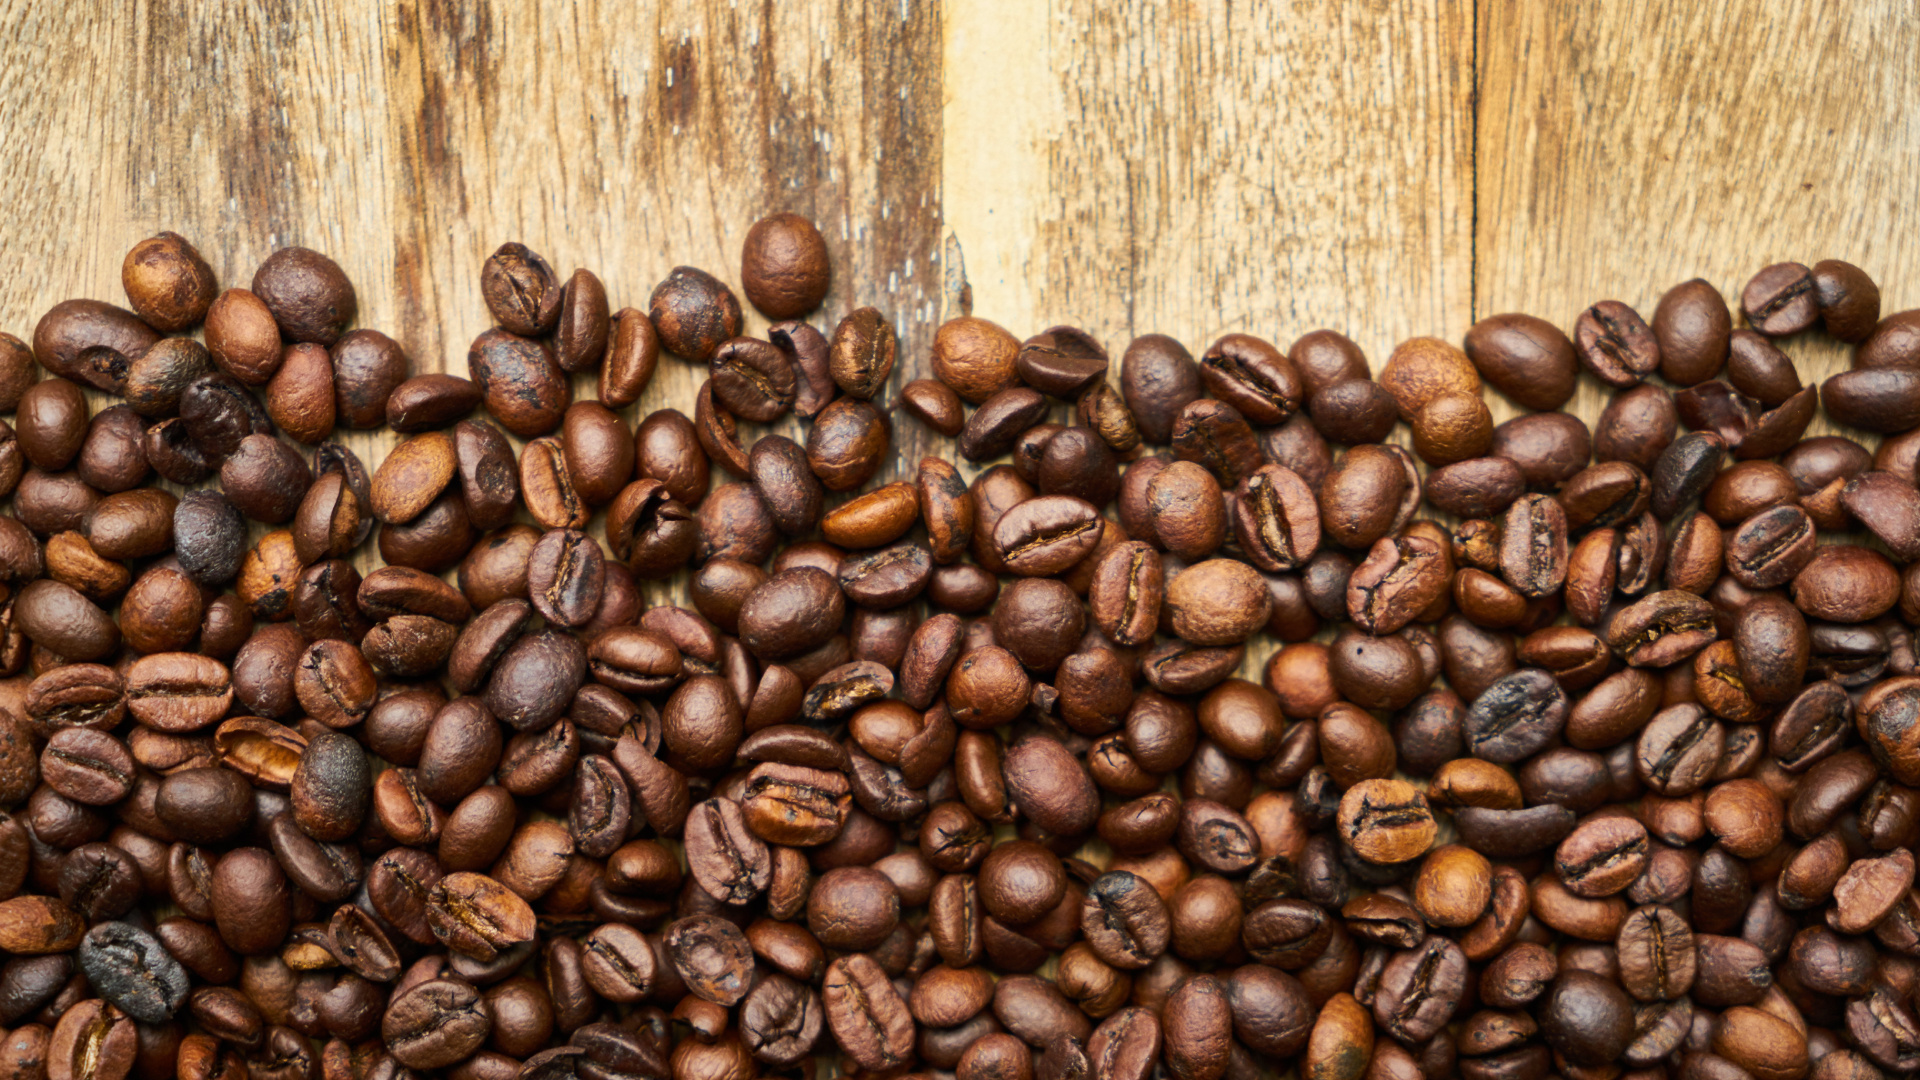 咖啡豆, 科纳咖啡, 牙买加蓝山咖啡, 咖啡因, 棕色 壁纸 1920x1080 允许